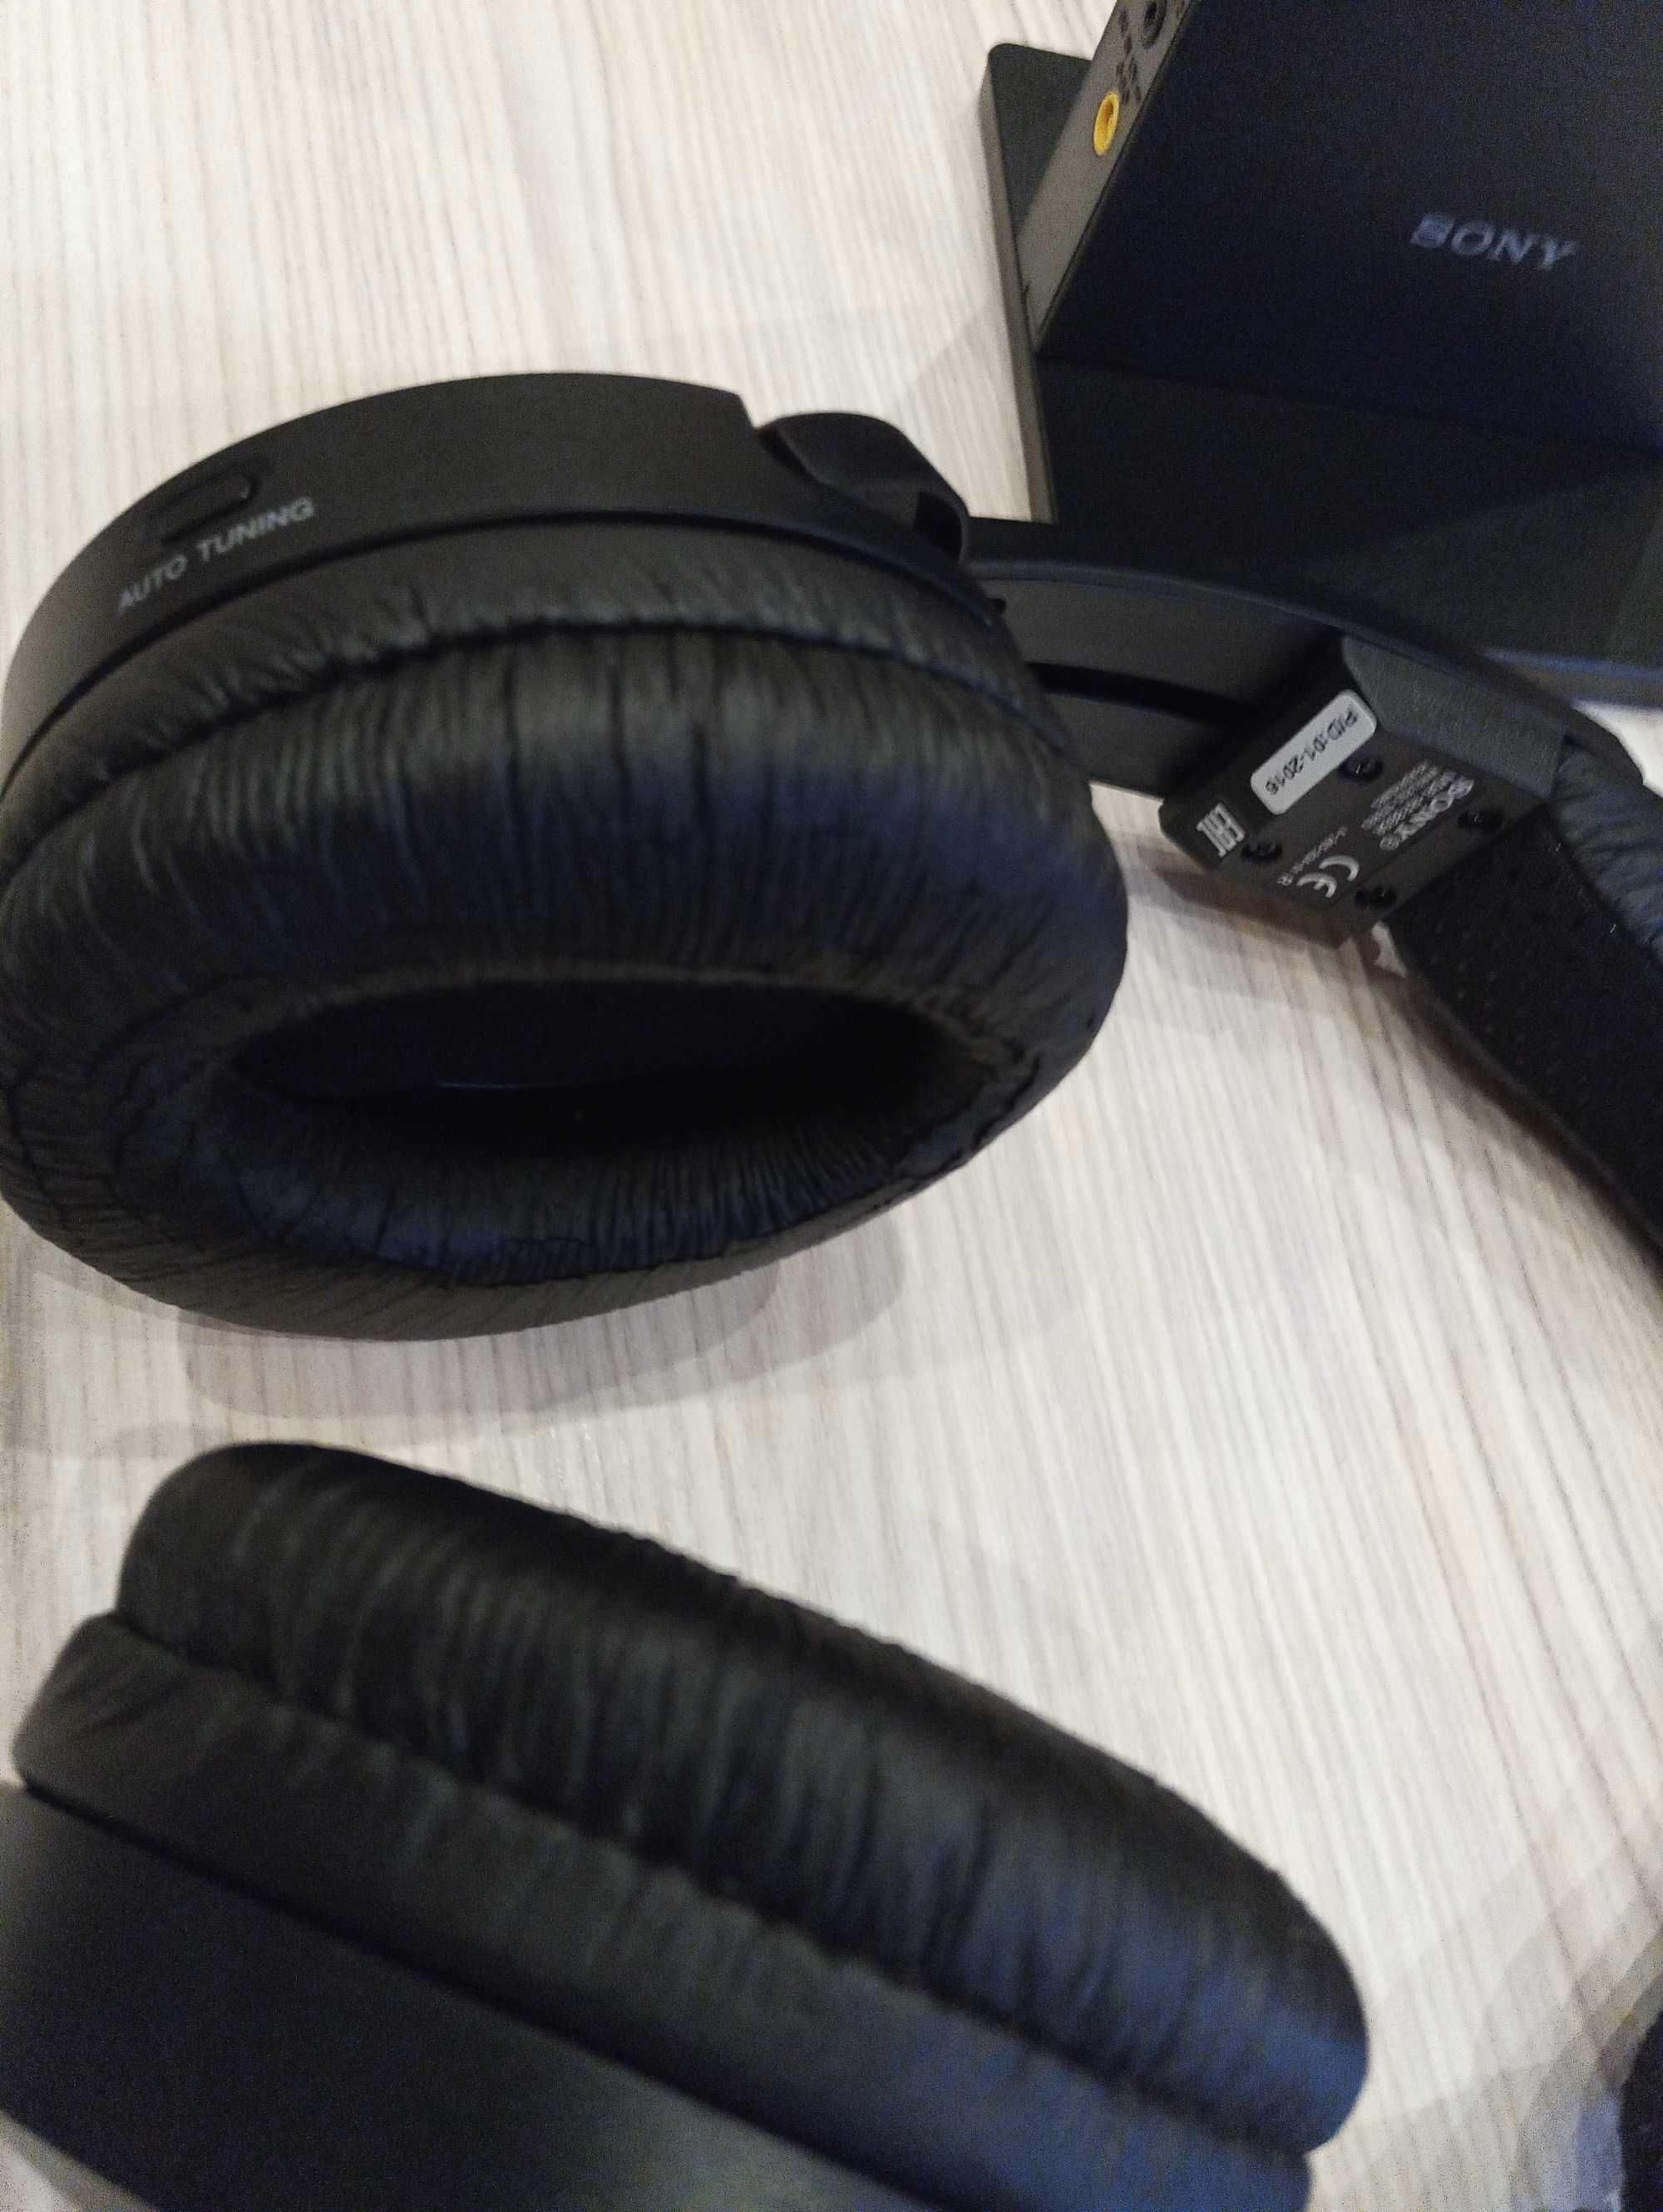 Безжични слушалки Sony MDR-RF 865R